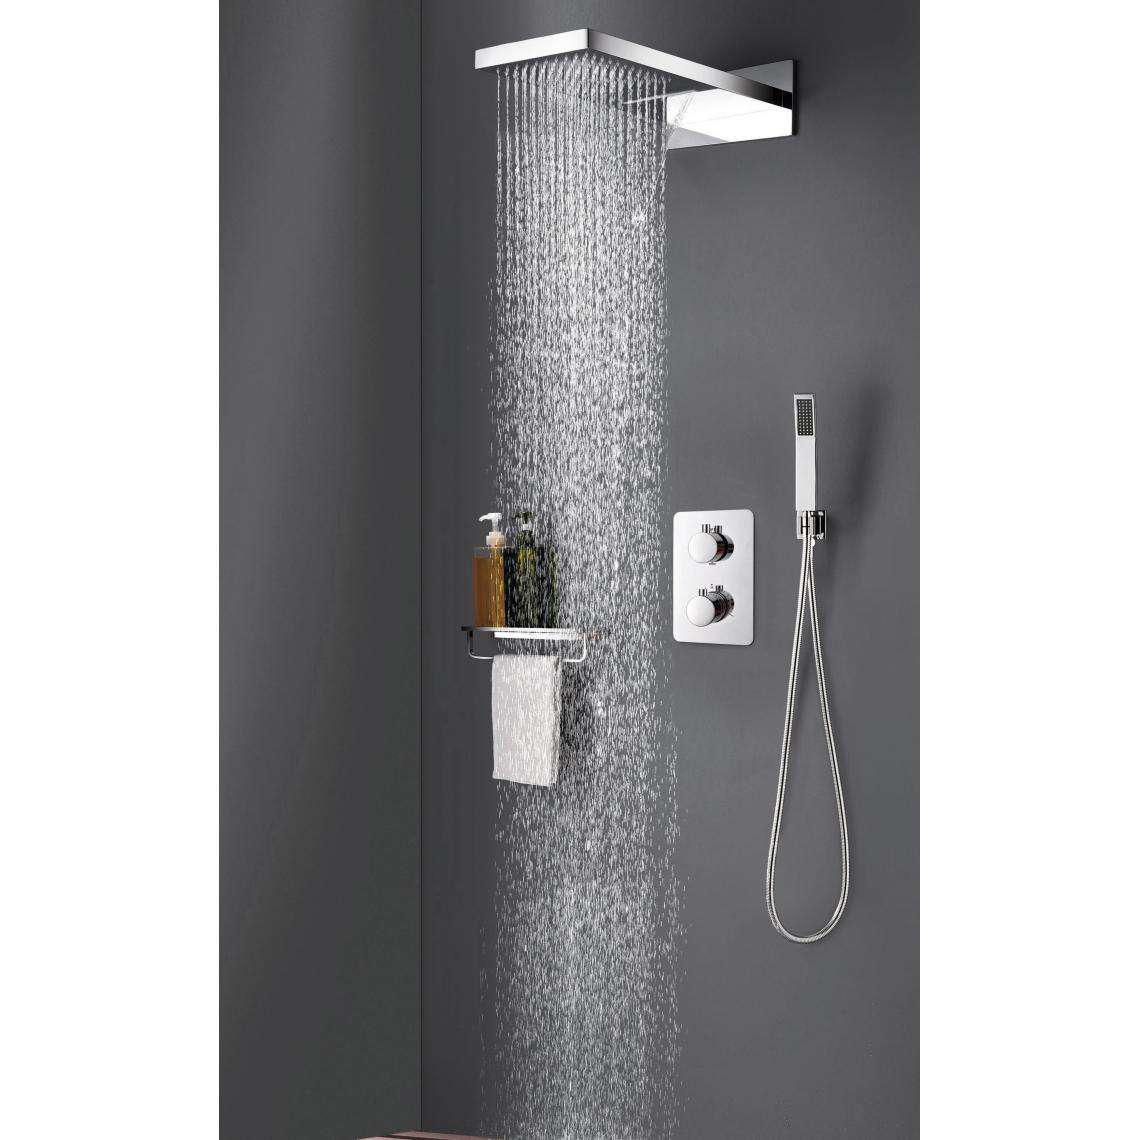 Kroos - Composition douche forme carré pour bain & baignoire - Mitigeur douche